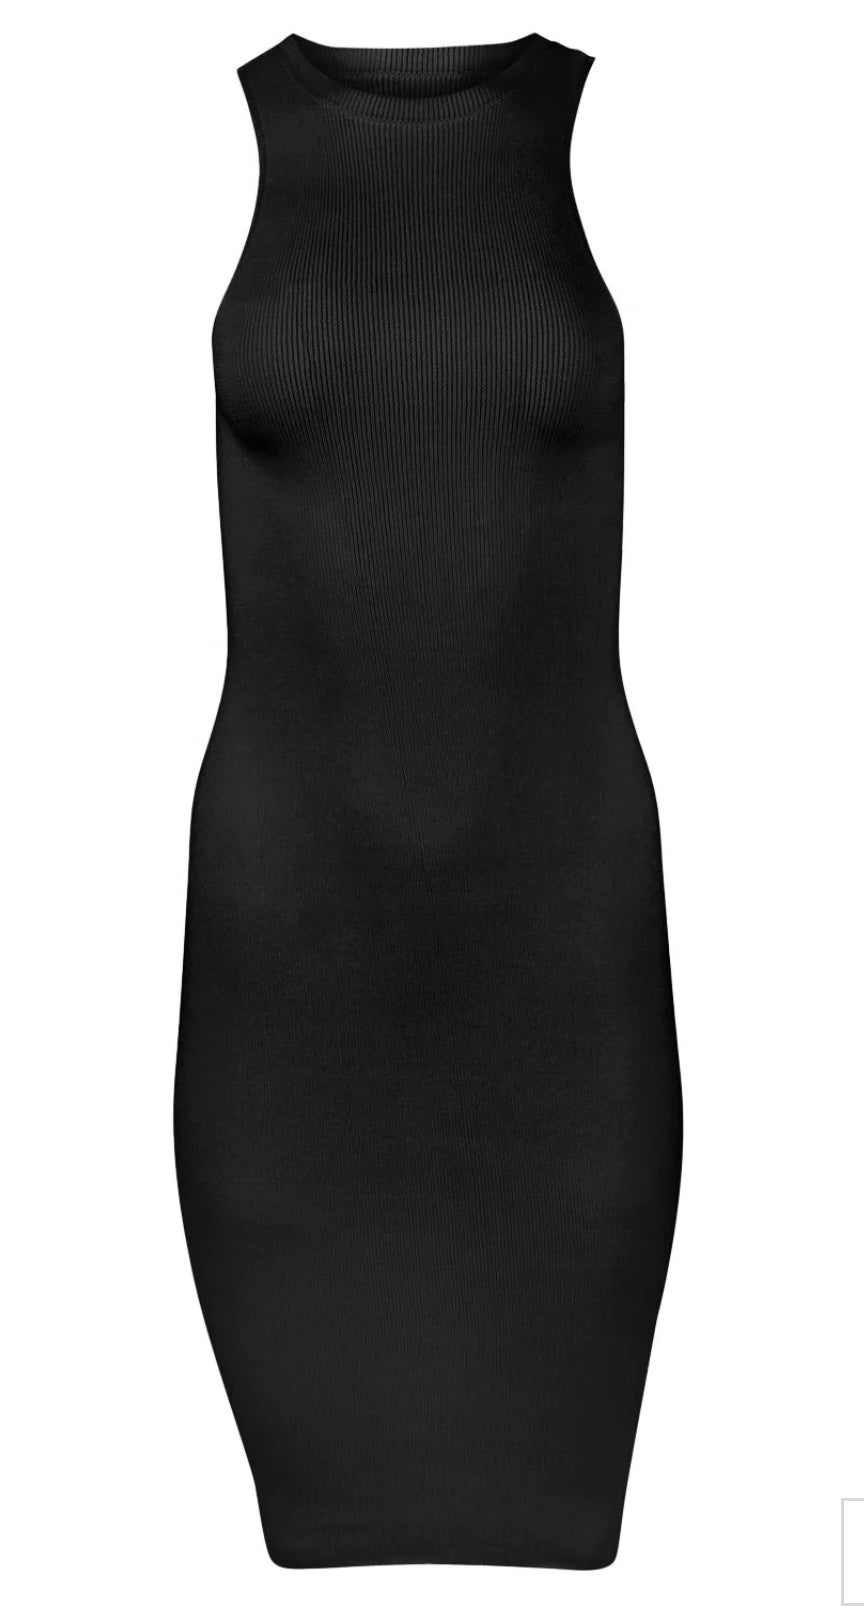 Sskein - Knit Tank Dress in Sand/Black